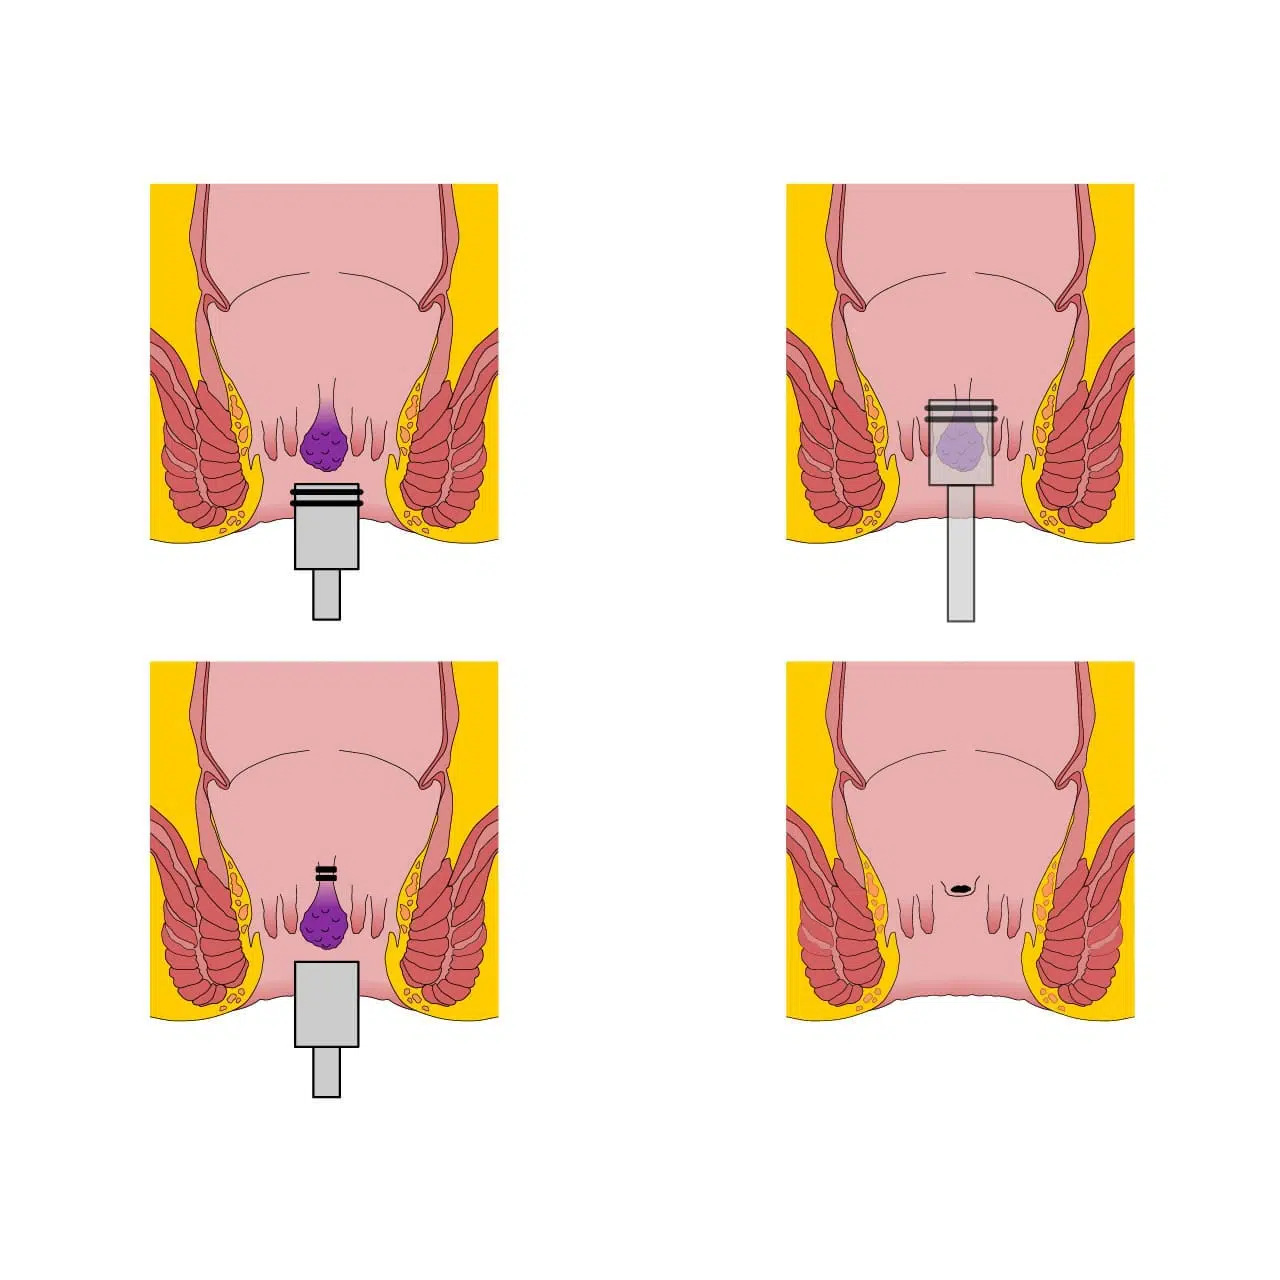 ligadura elástica (estrangulamento) de hemorroidas internas é realizada no próprio consultório médico.